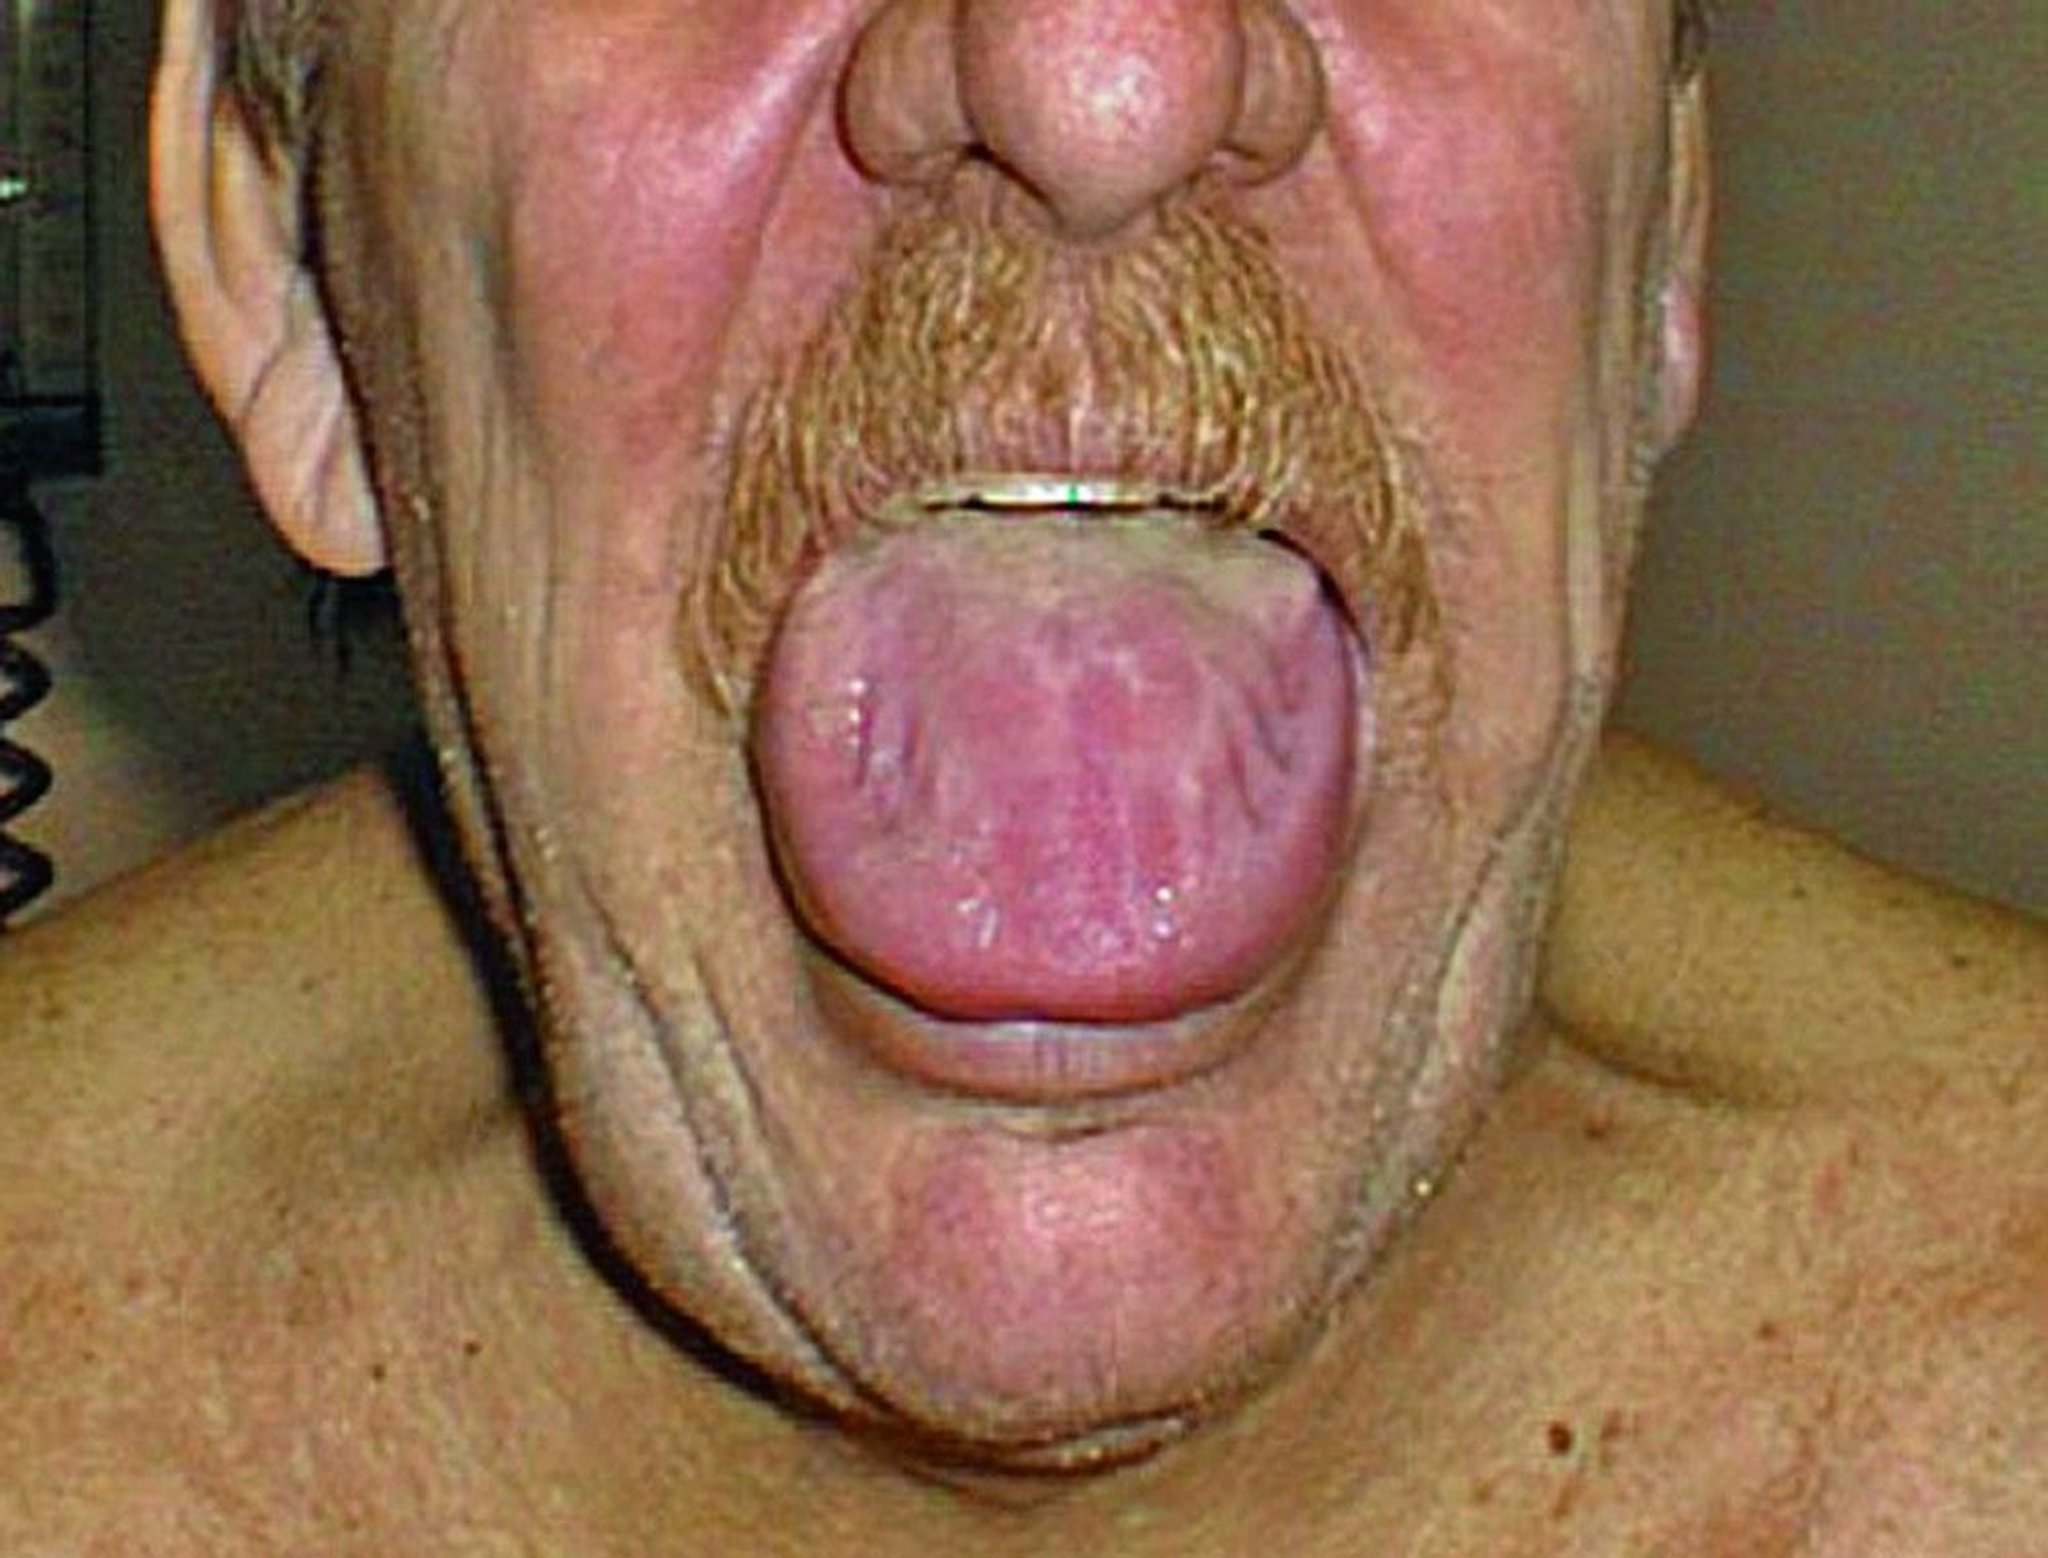 Macroglossia (Enlarged Tongue)